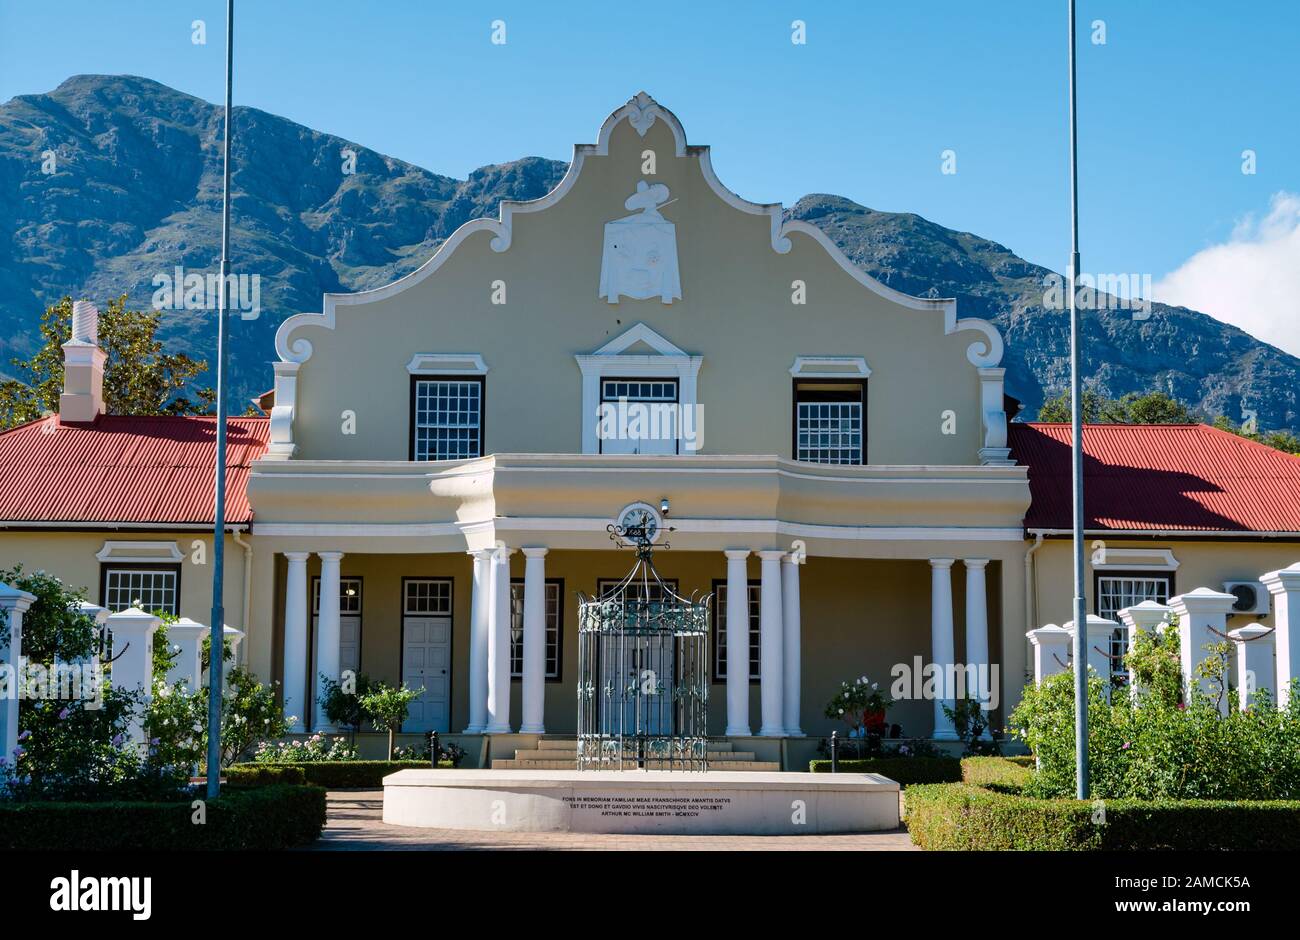 Casa tradizionale olandese in stile Cape con fontana, casa Arthur William Smith, Huguenot Road, Franschhoek, Sud Africa Foto Stock